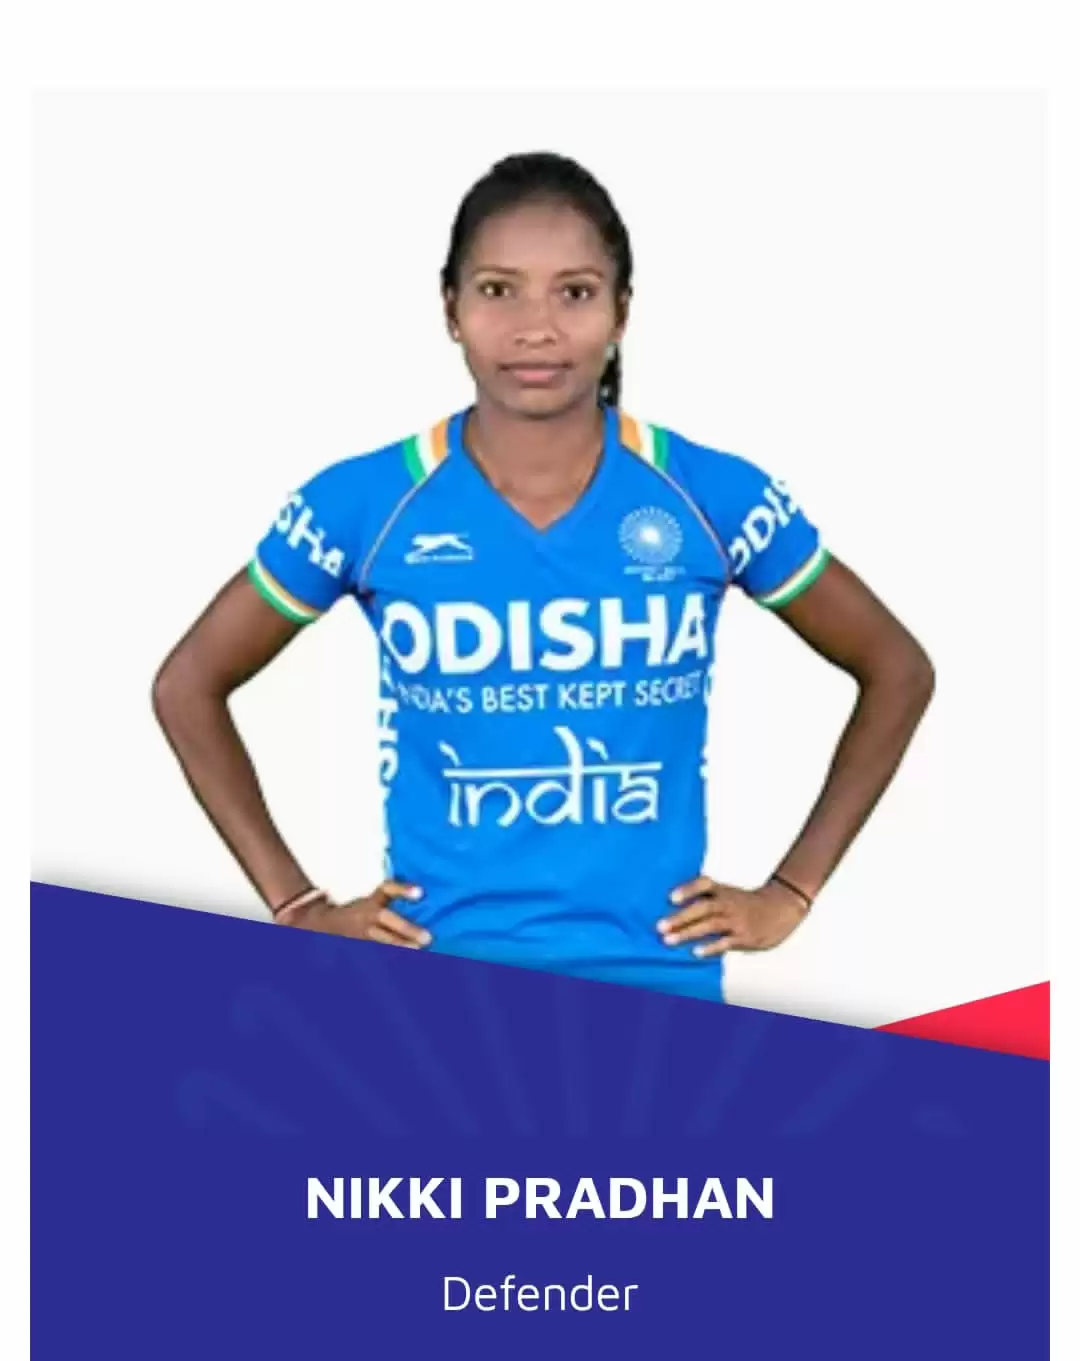 कॉमनवेल्थ गेम्स के लिए चयनित भारतीय महिला हॉकी टीम में झारखंड की तीन खिलाड़ी शामिल